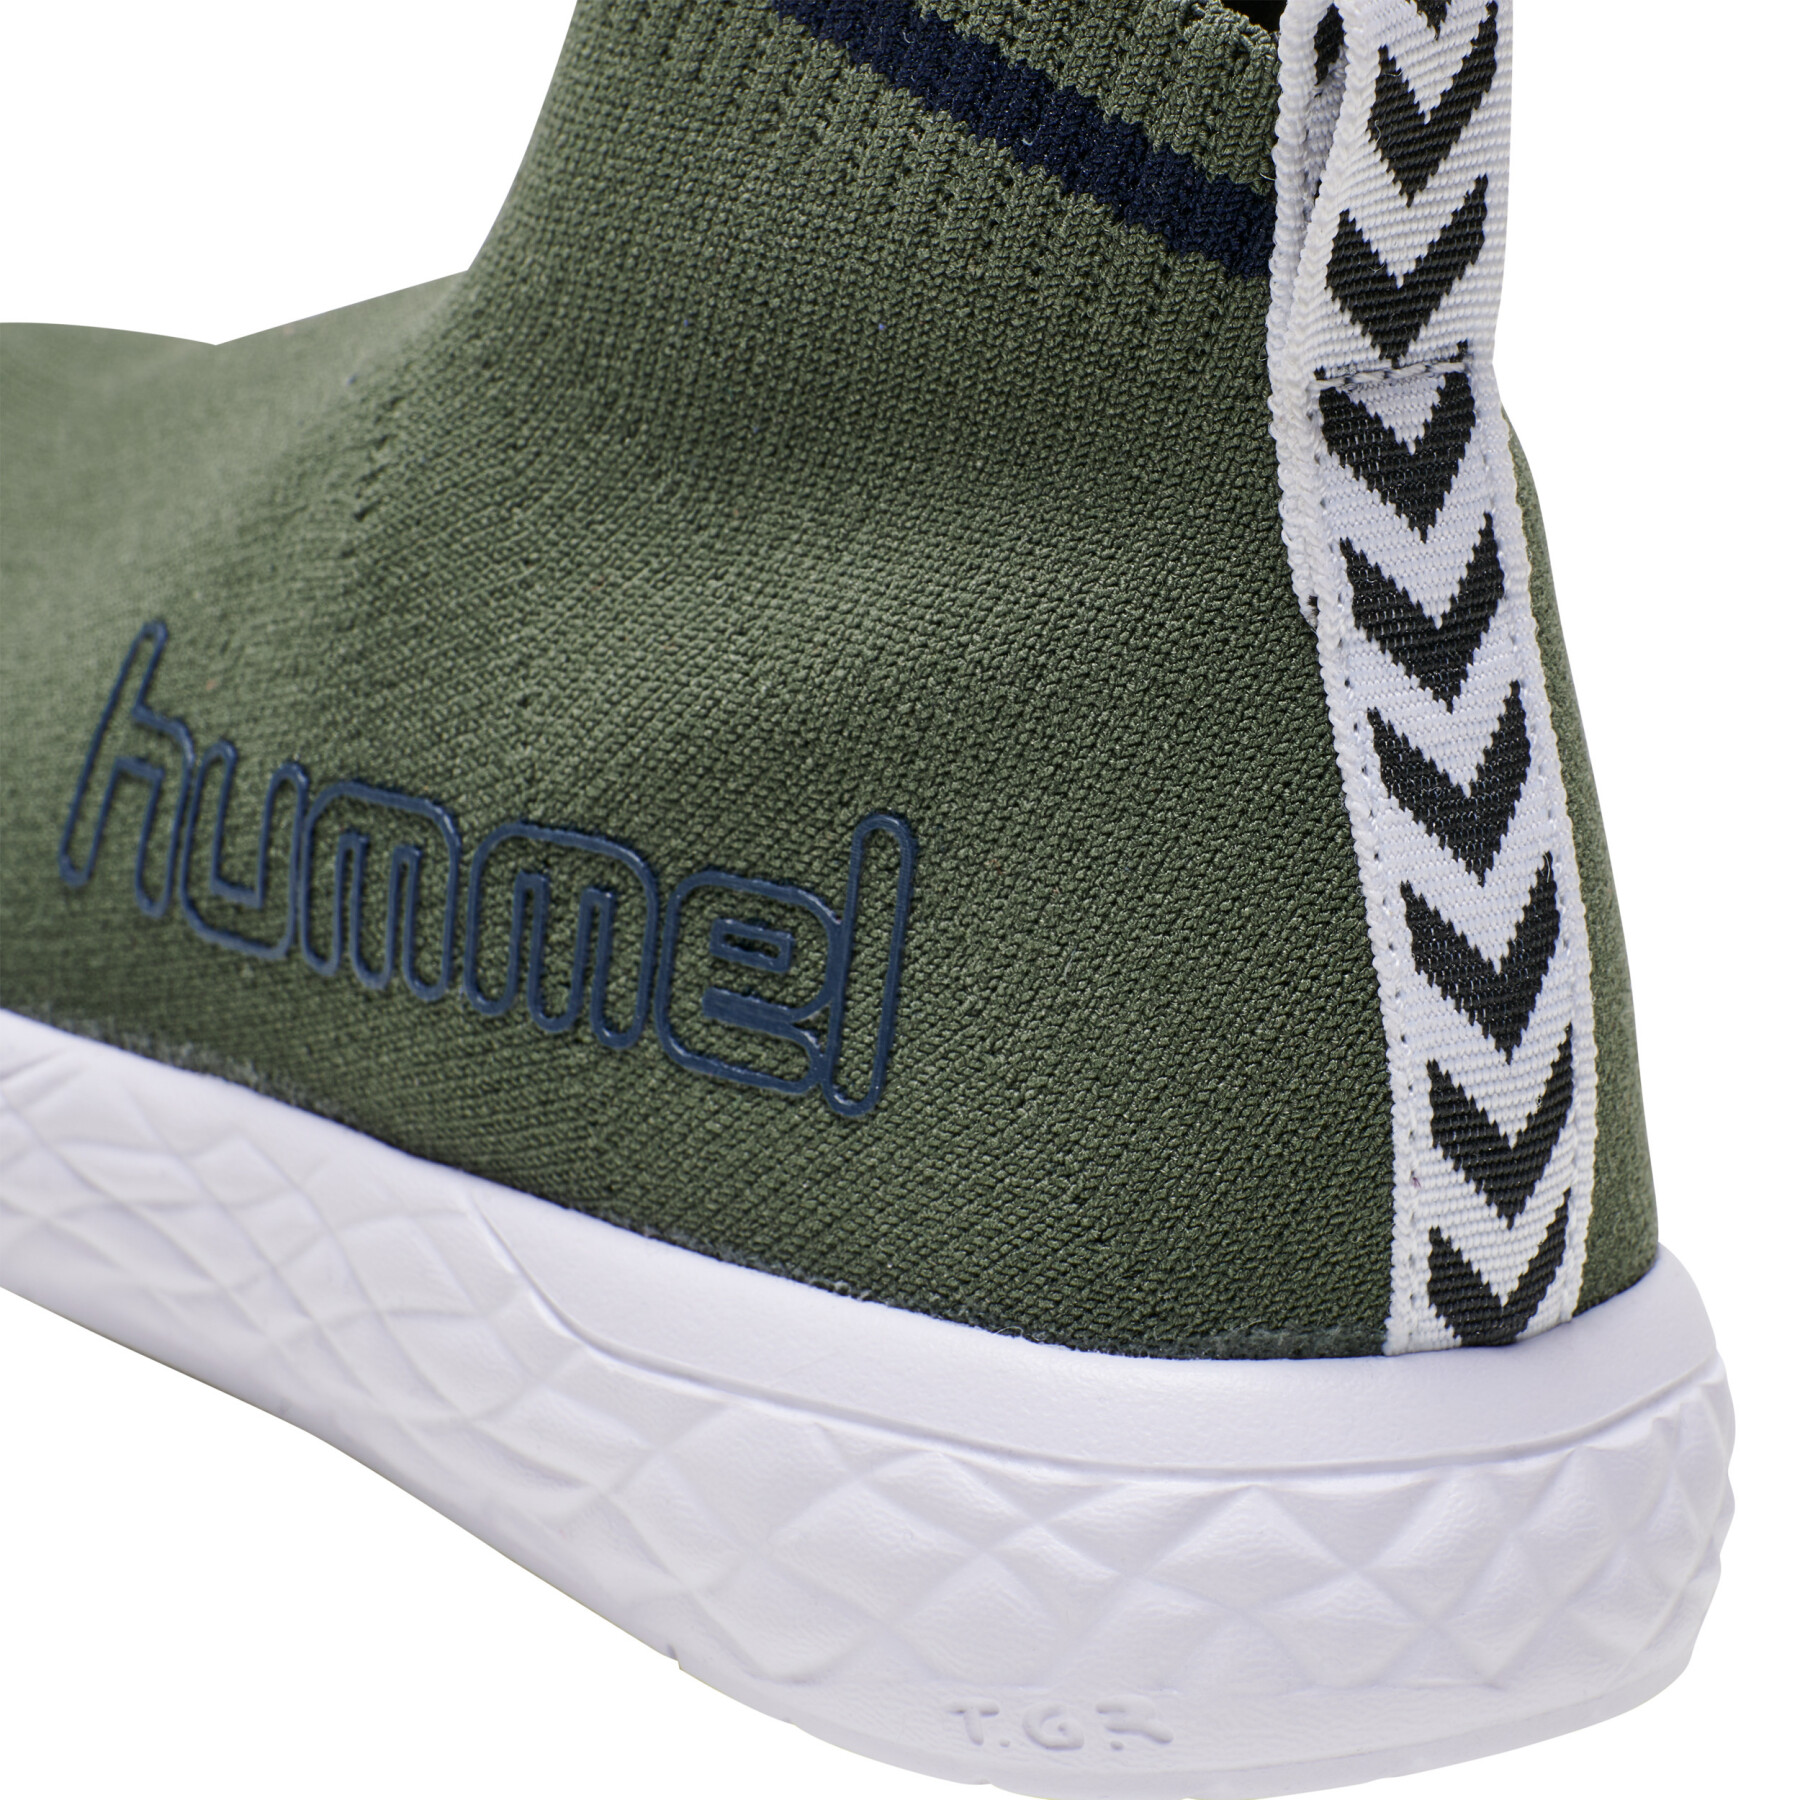 Sneakers Kind Hummel terrafly sock runner